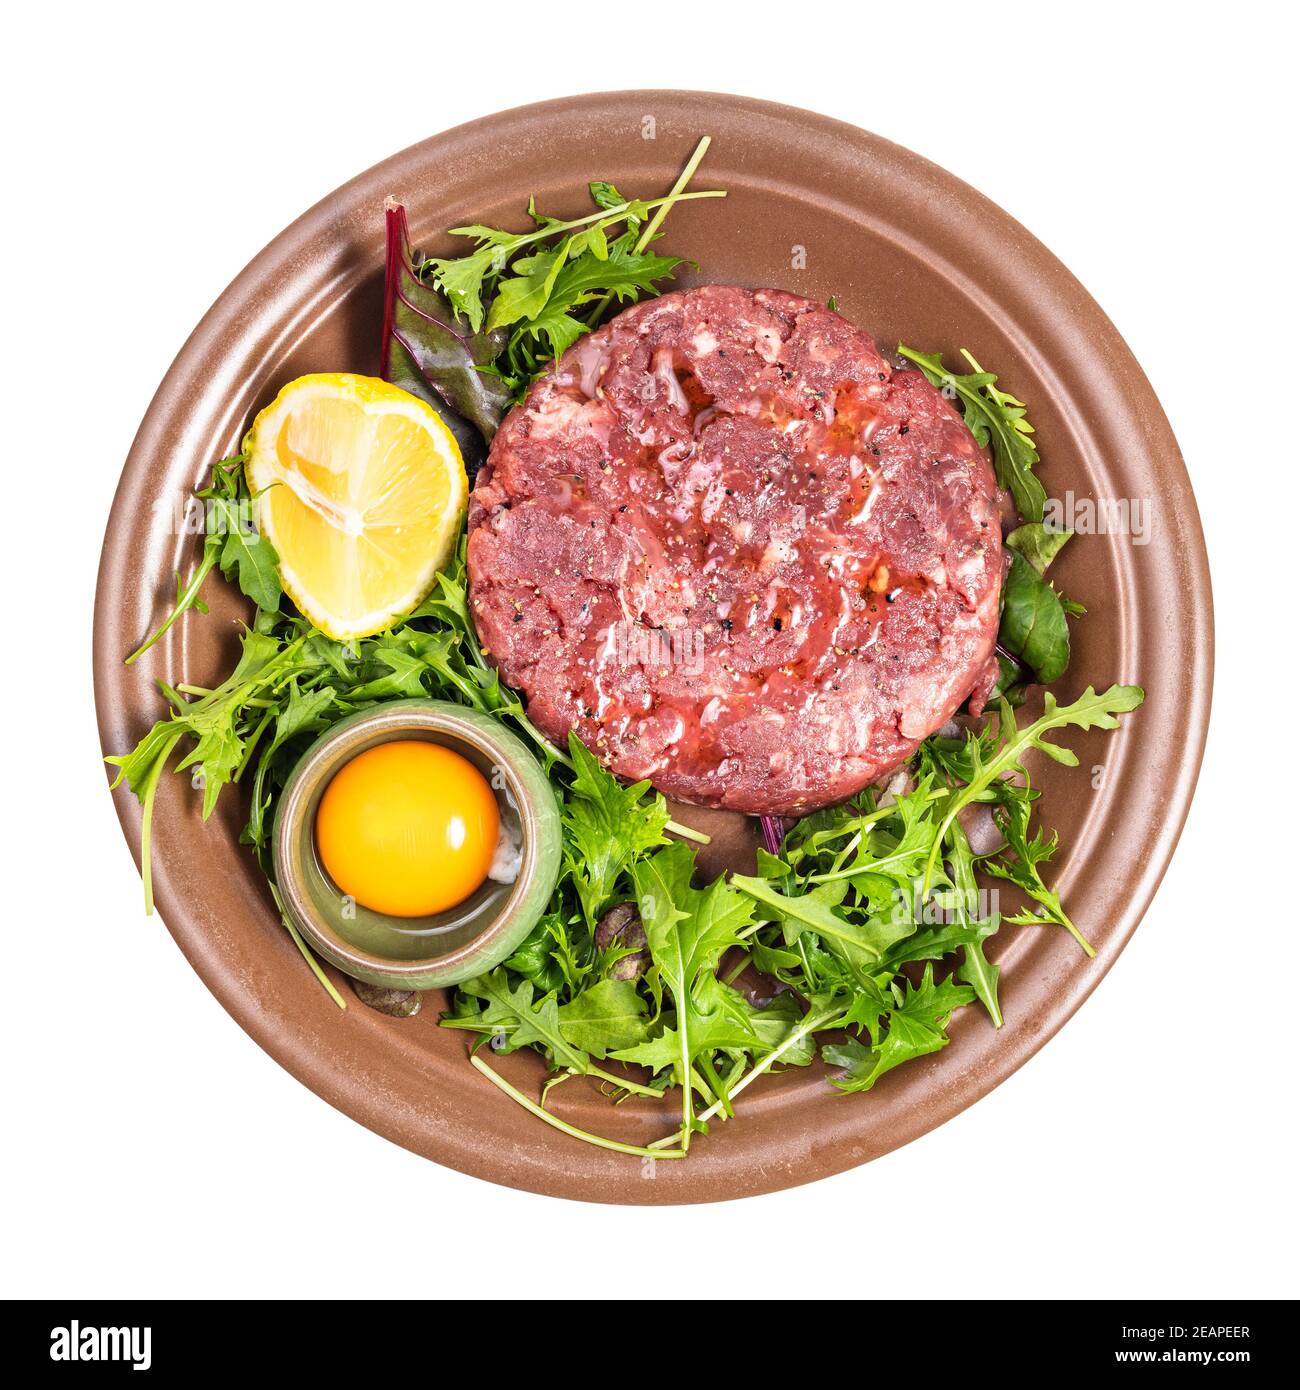 Vue de dessus de la portion Steak tartare sur l'assiette brune Photo Stock  - Alamy